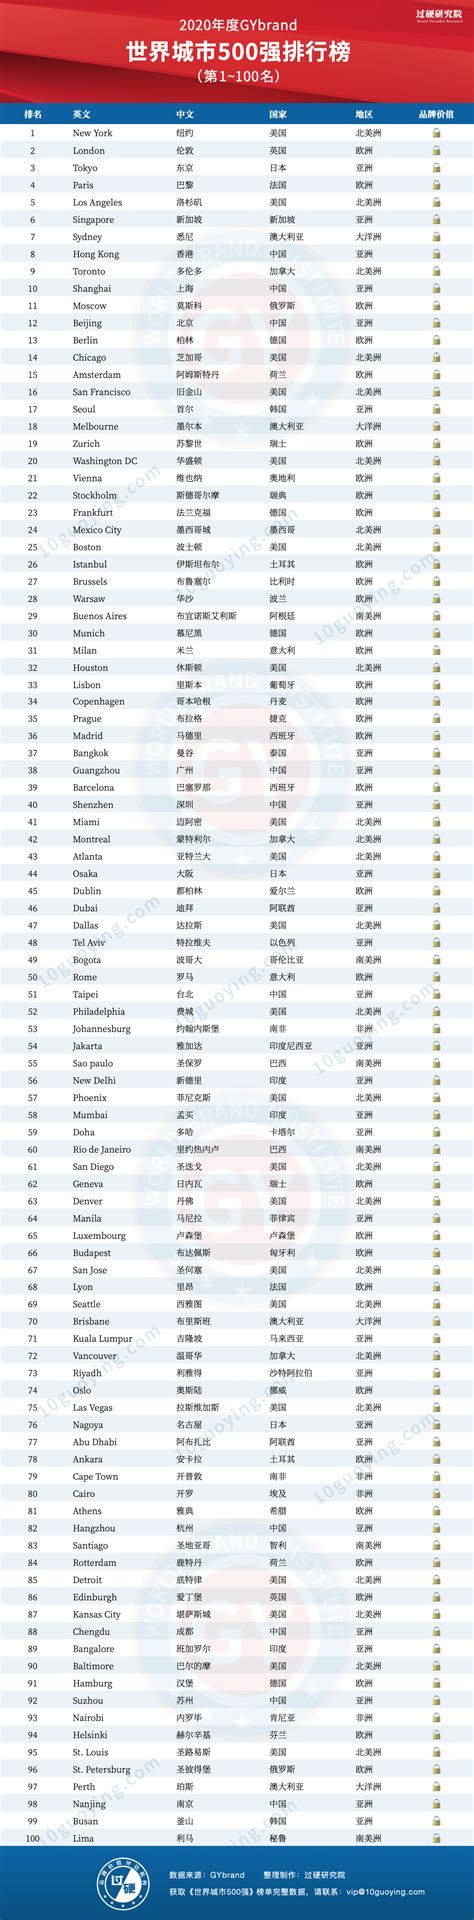 2020世界城市排名500强发布 中国40座城市上榜(附完整榜单)